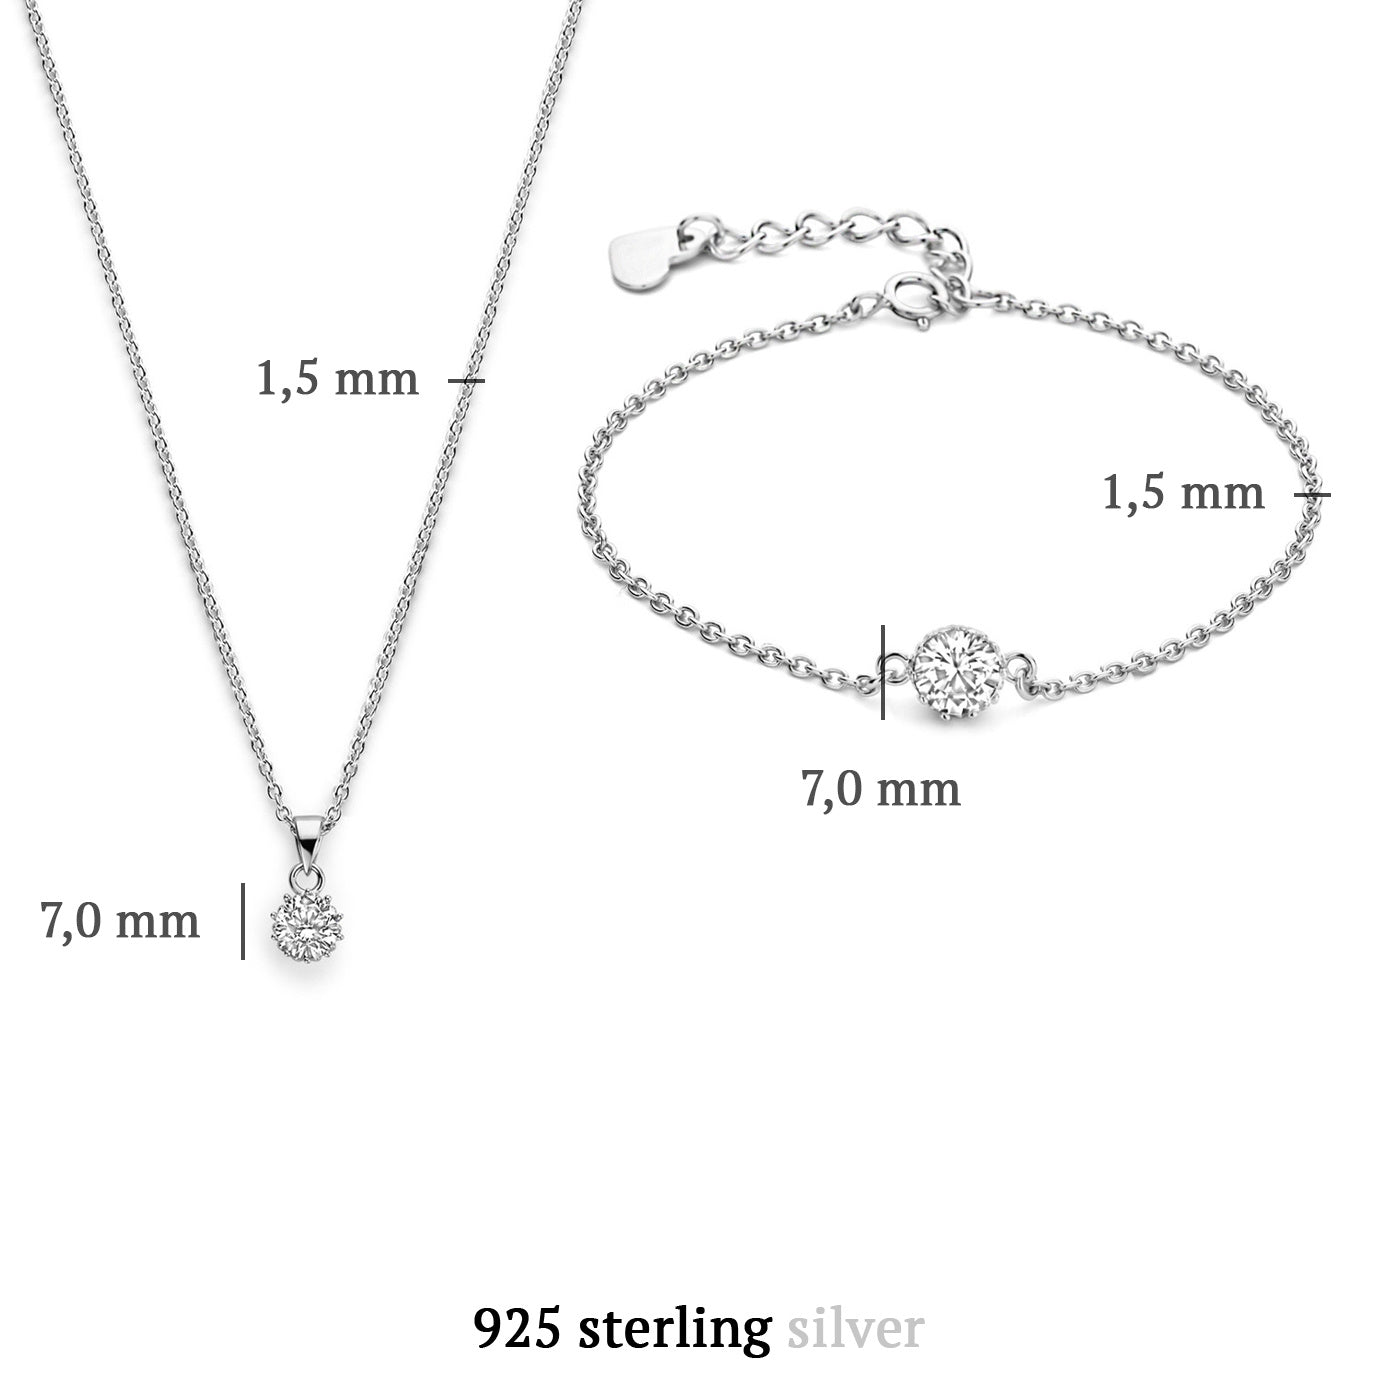 Sorprendimi 925 Sterling Silber Kette und Armband Geschenkset mit Zirkonia Stein